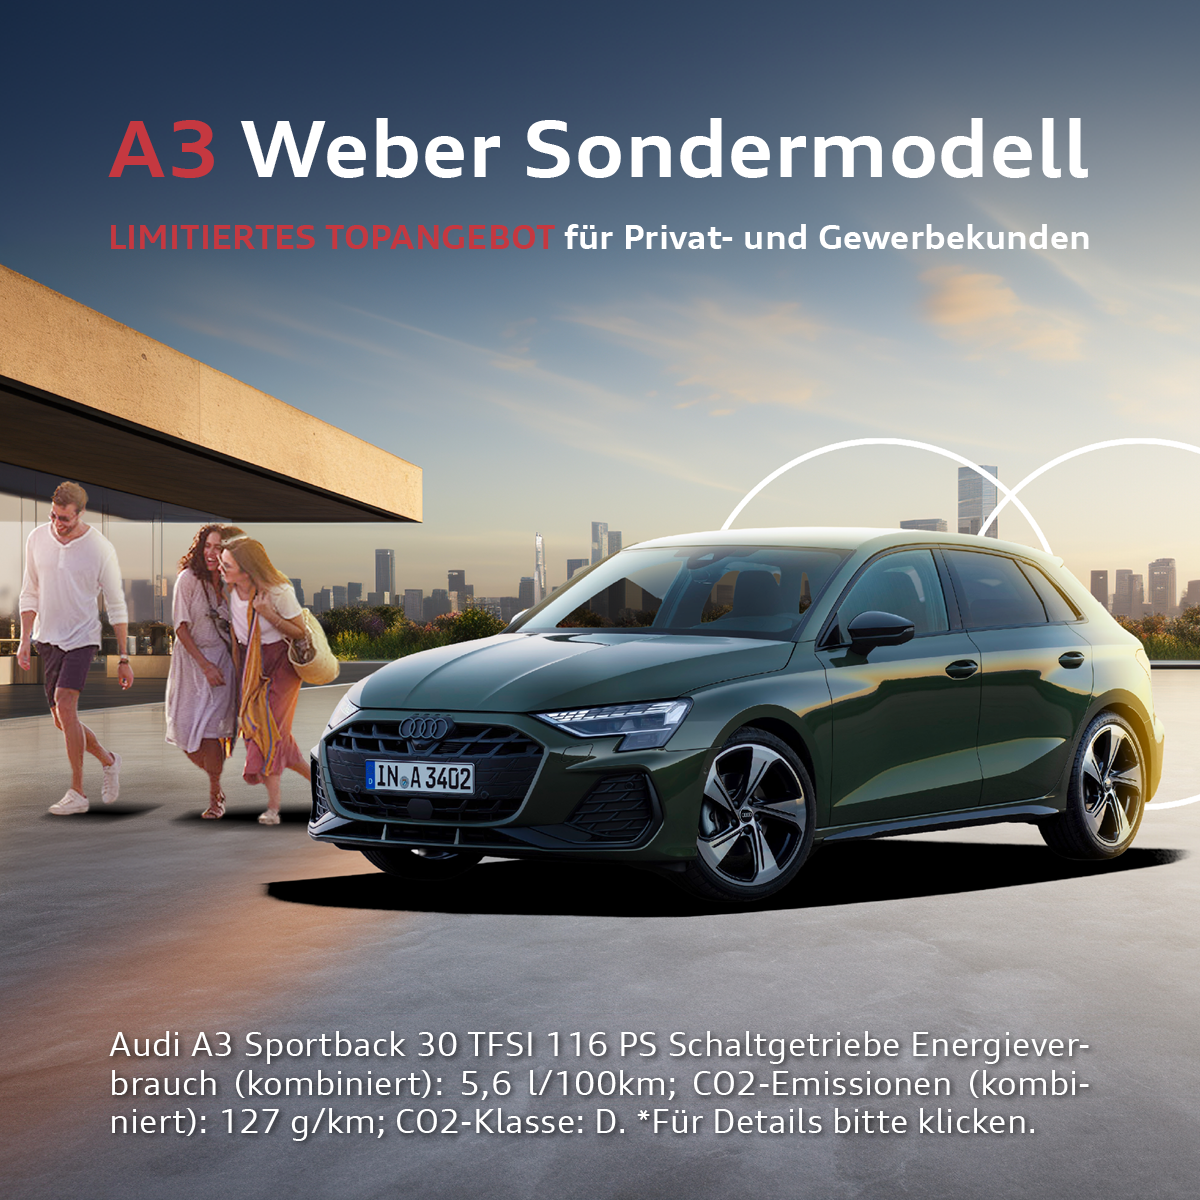 Autohaus Weber A3 Sondermodell Top Leasing